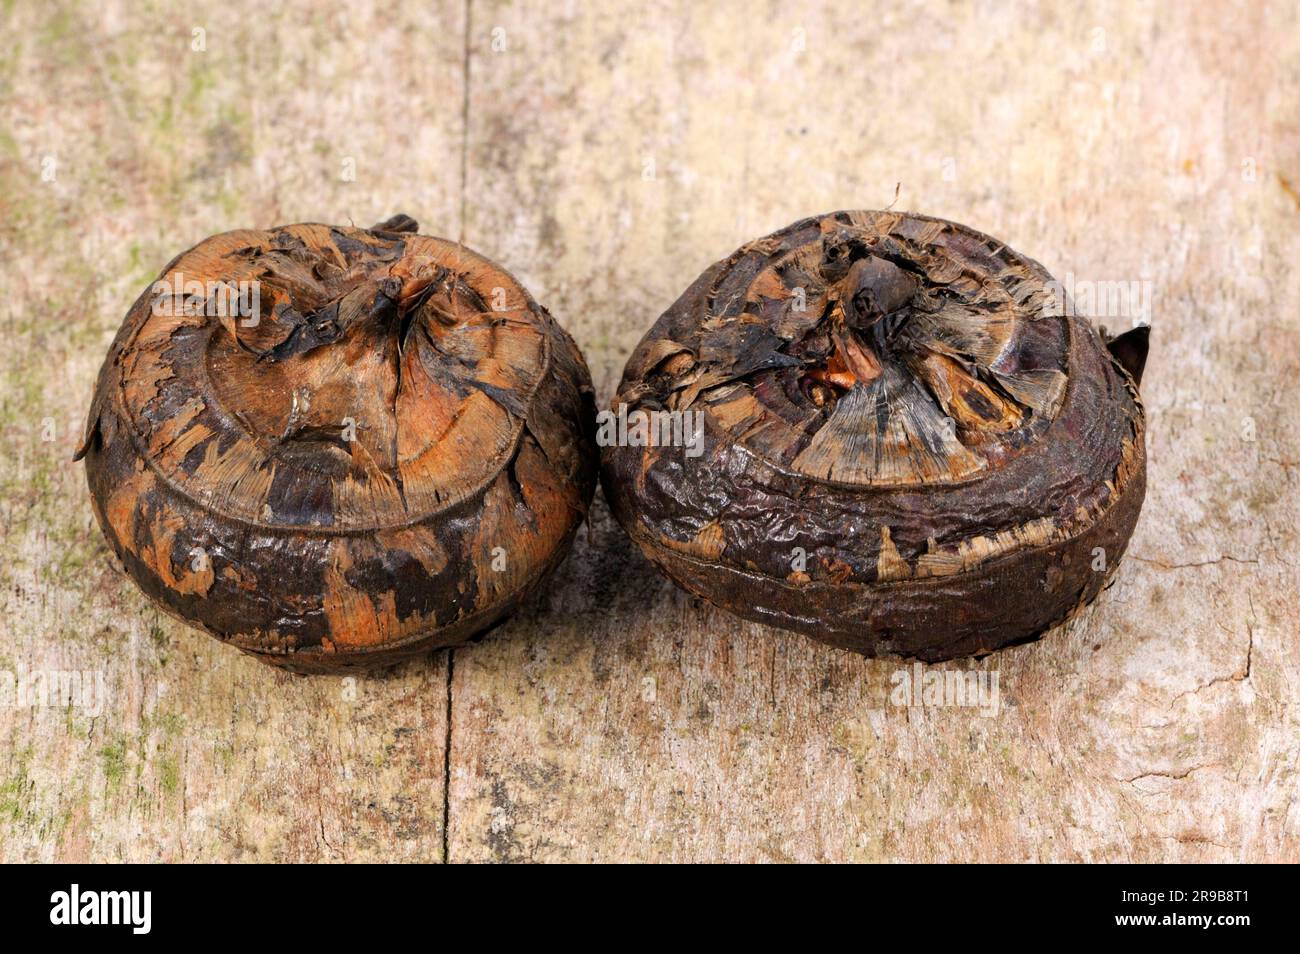 Chinese water chestnut (Eleocharis dulcis), root tubers Stock Photo